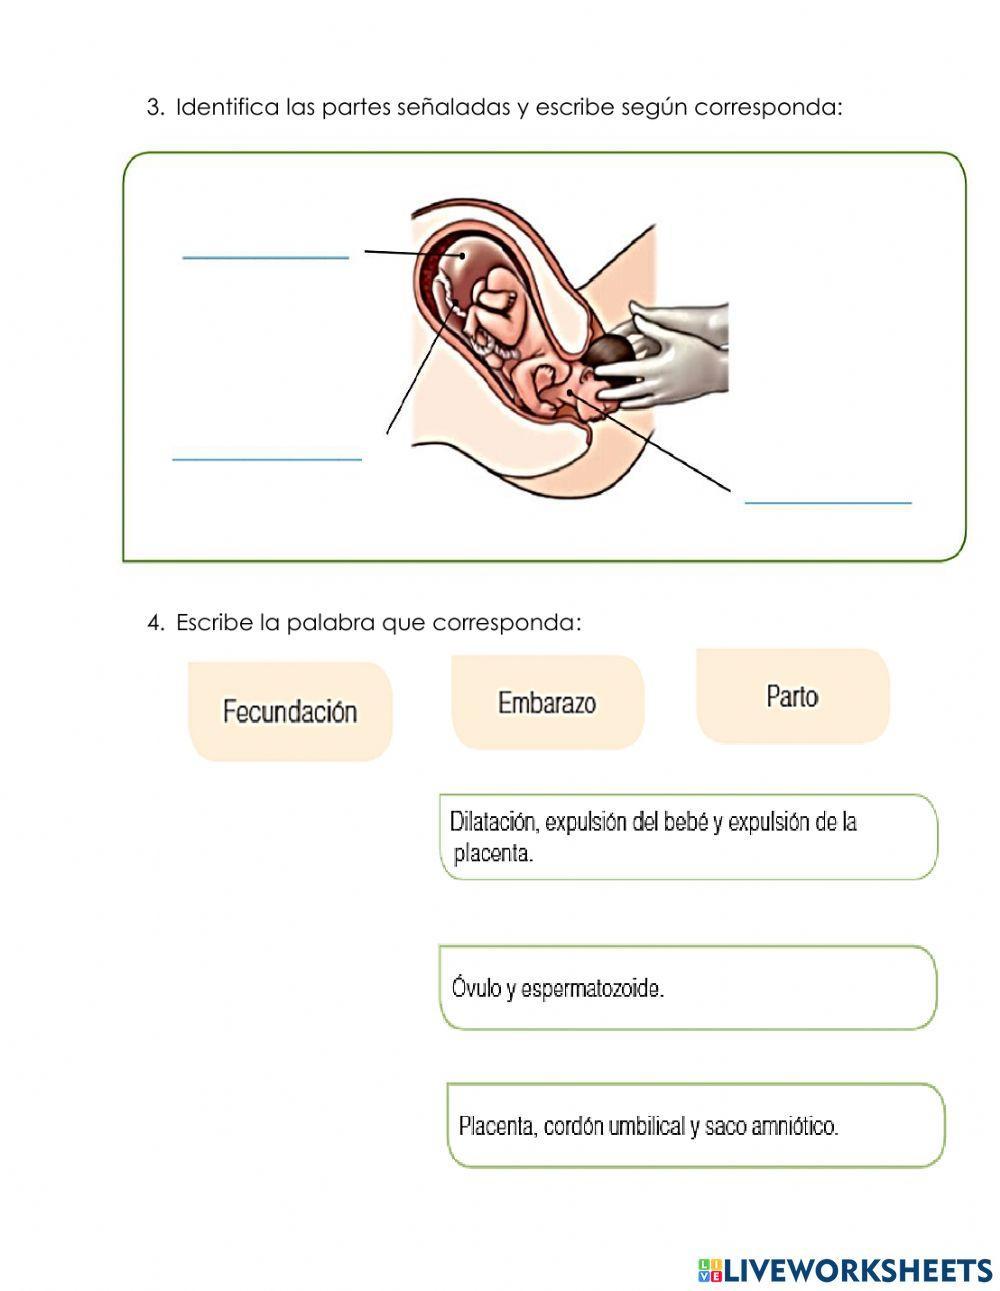 Fecundación, embarazo y parto